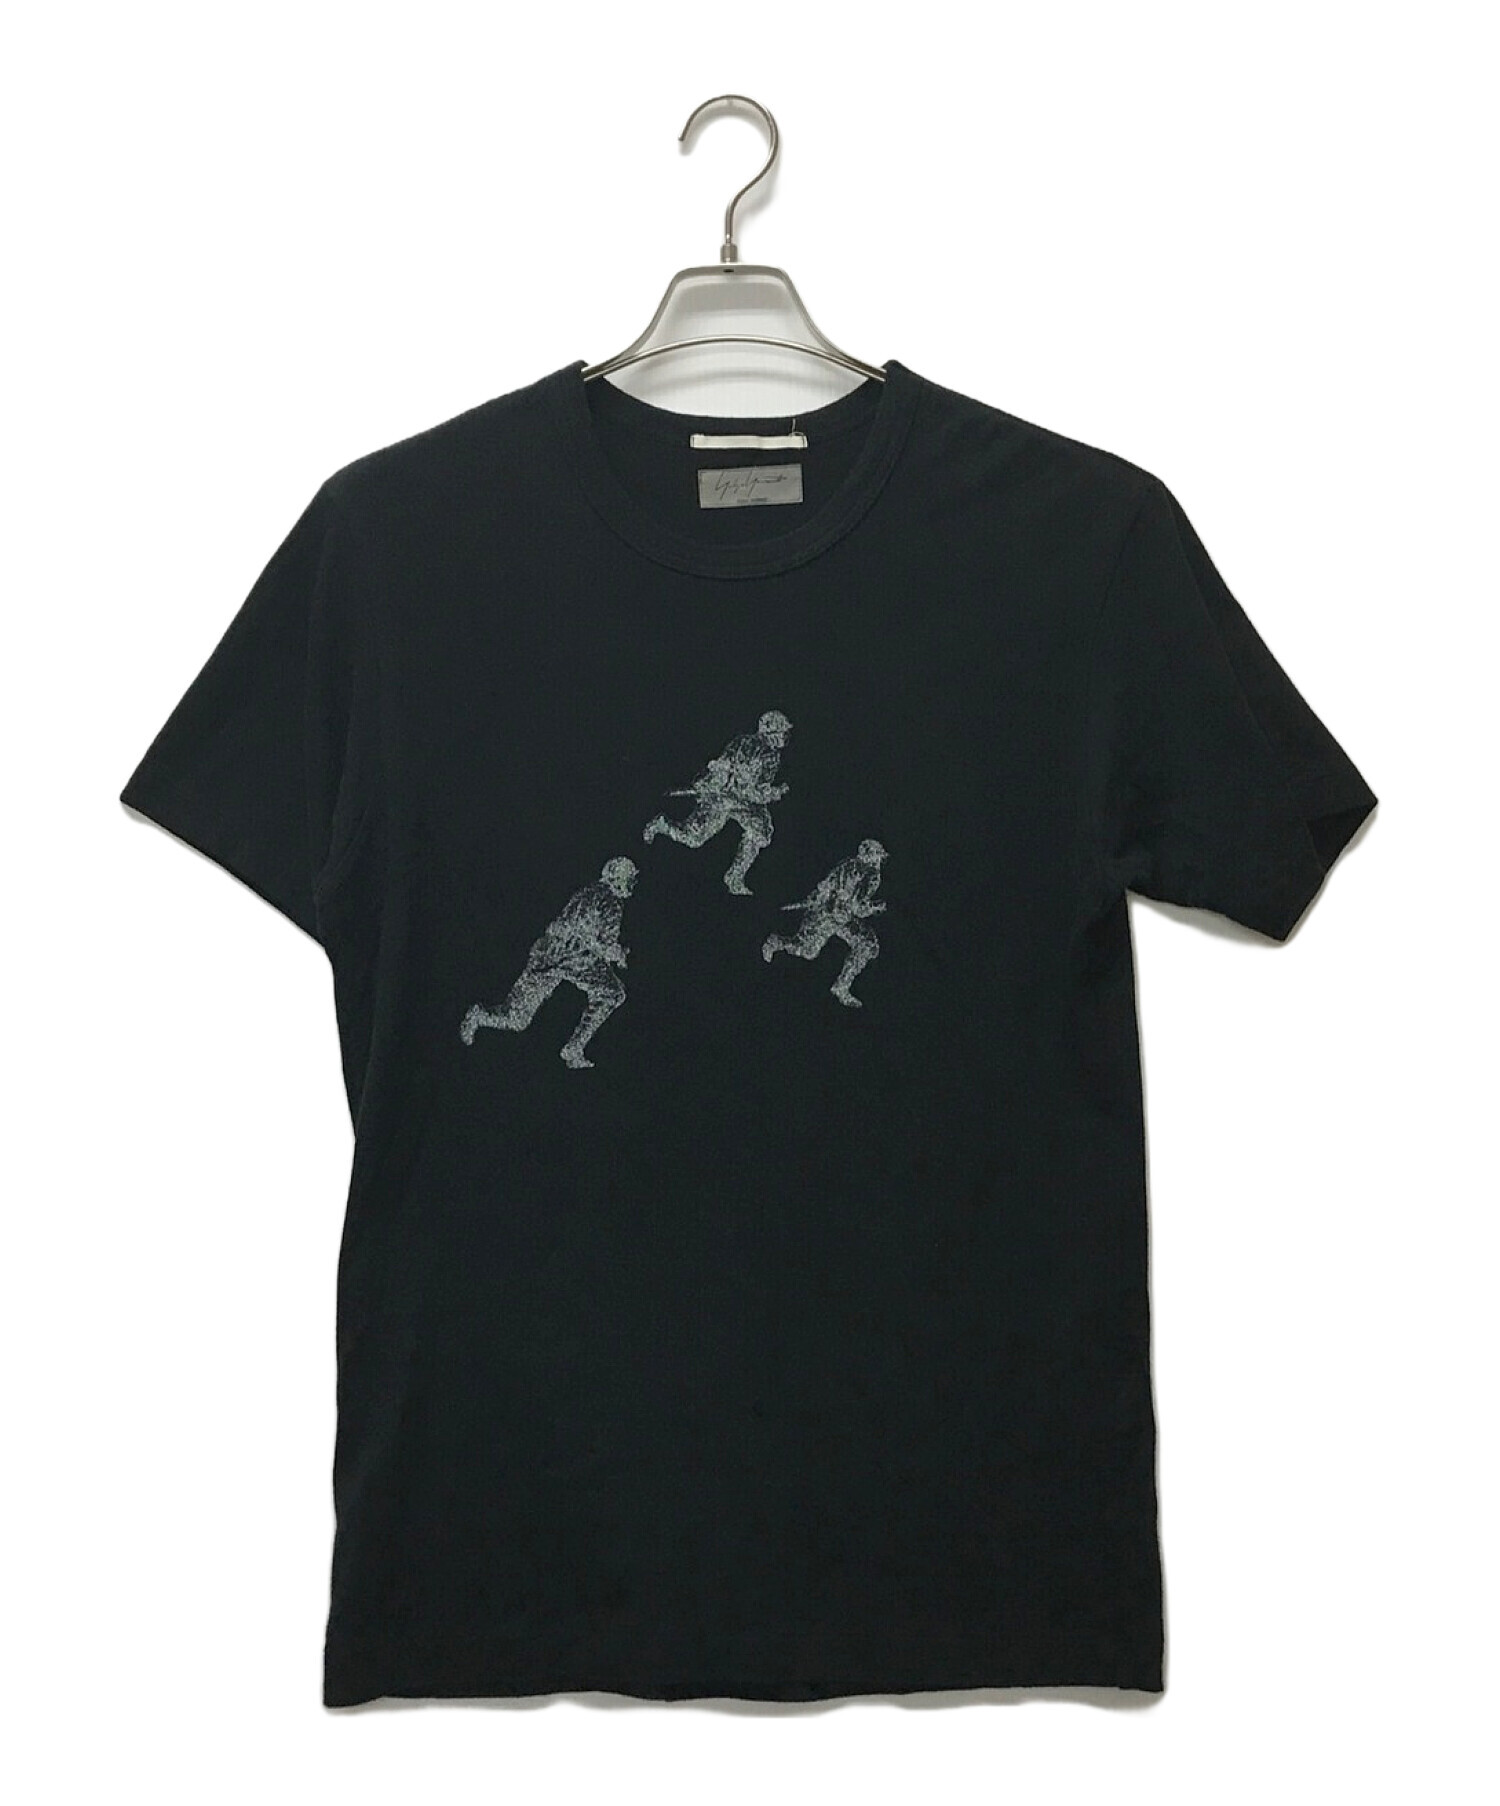 Yohji Yamamoto pour homme (ヨウジヤマモト プールオム) コラボプリントTシャツ ブラック サイズ:3